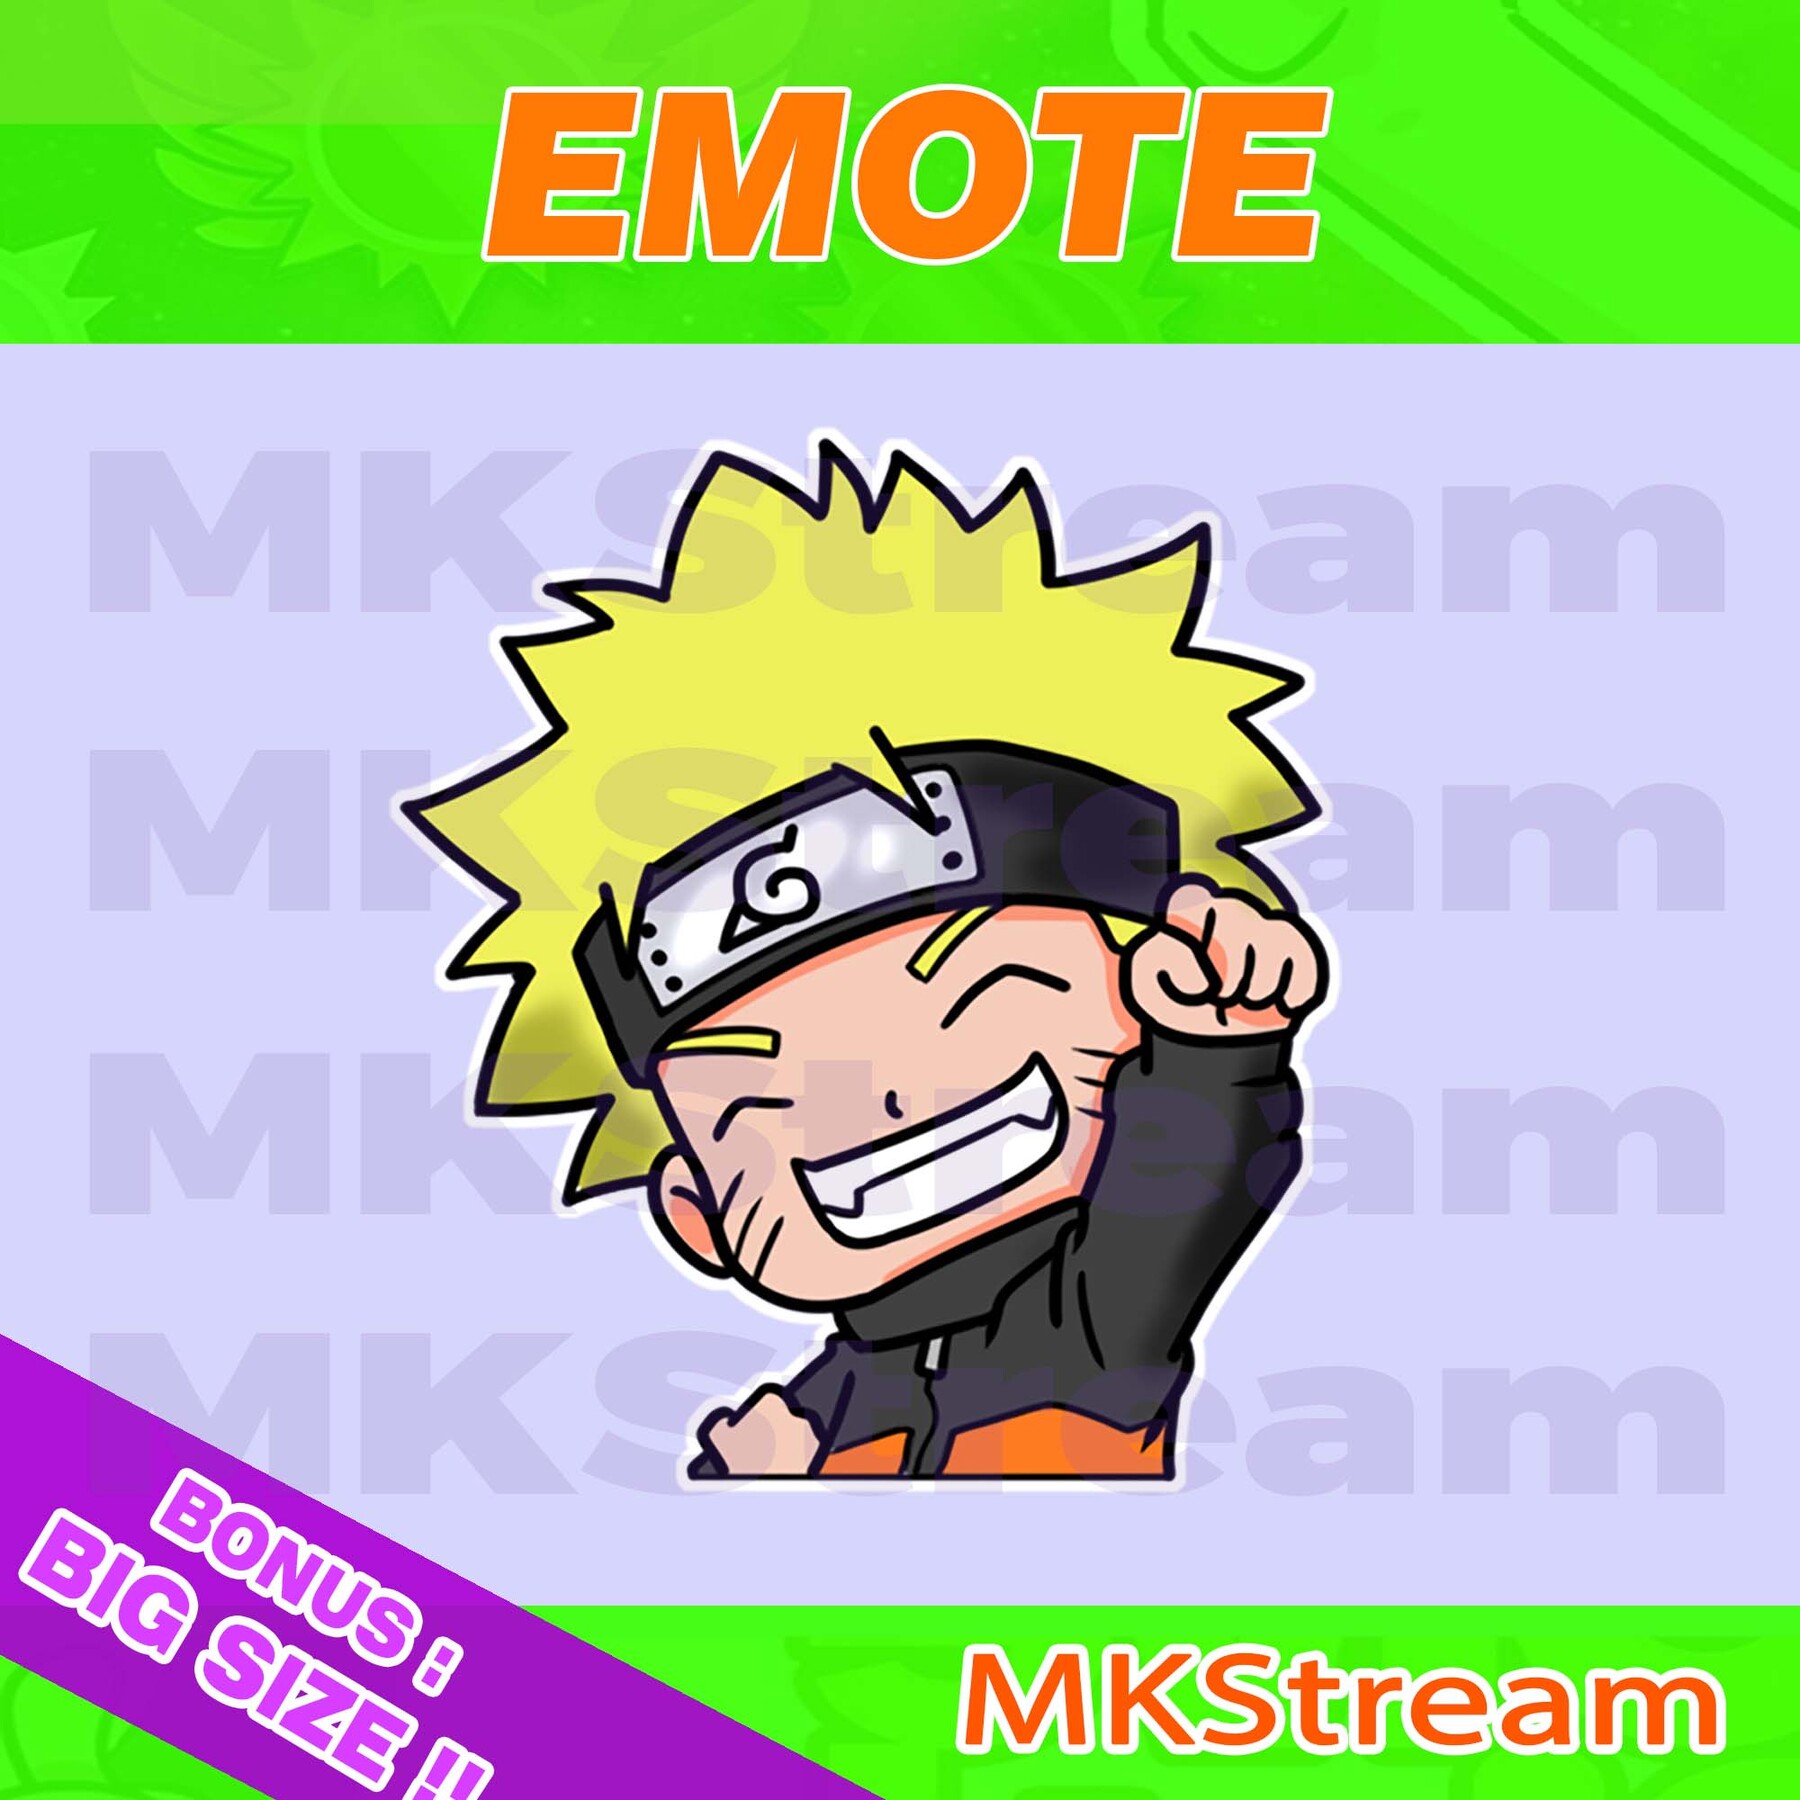 Emote Twitch chibi Naruto: Nếu bạn là một game thủ Twitch, emote chibi Naruto chắc chắn sẽ đem lại niềm vui và sự trào lưu cho kênh của bạn. Hình ảnh nhỏ bé và đáng yêu sẽ trở thành cảm hứng cho những người theo dõi của bạn để tương tác trong suốt cuộc trò chuyện.